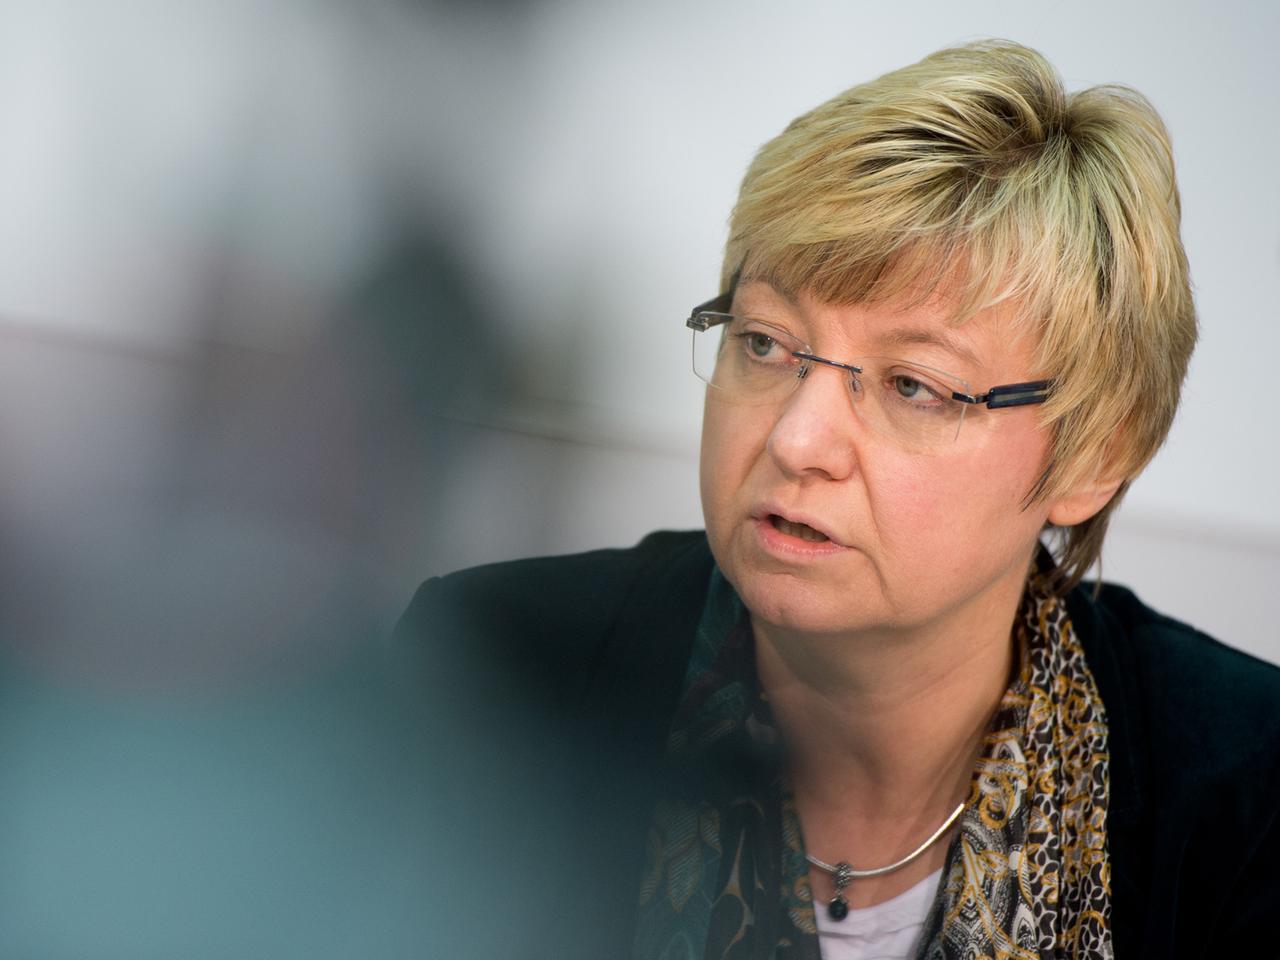 Niedersachsens Kultusministerin Frauke Heiligenstadt (SPD) am 19.02.2014 im Landtag in Hannover während der Landespressekonferenz.